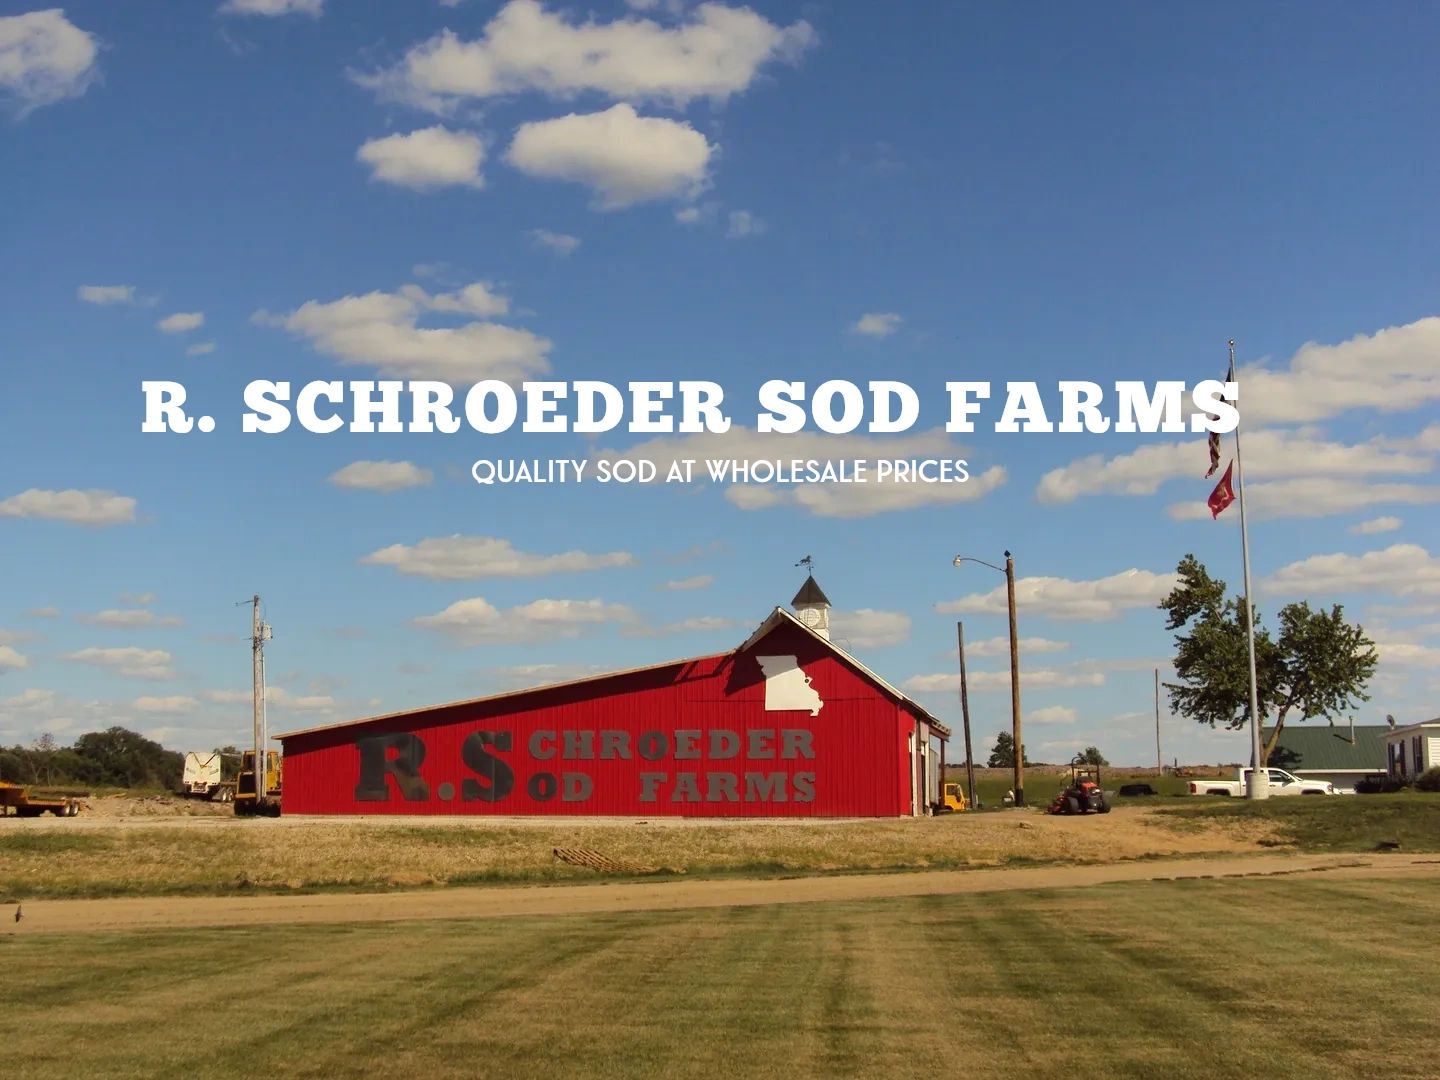 Schroeder & Son's Farm